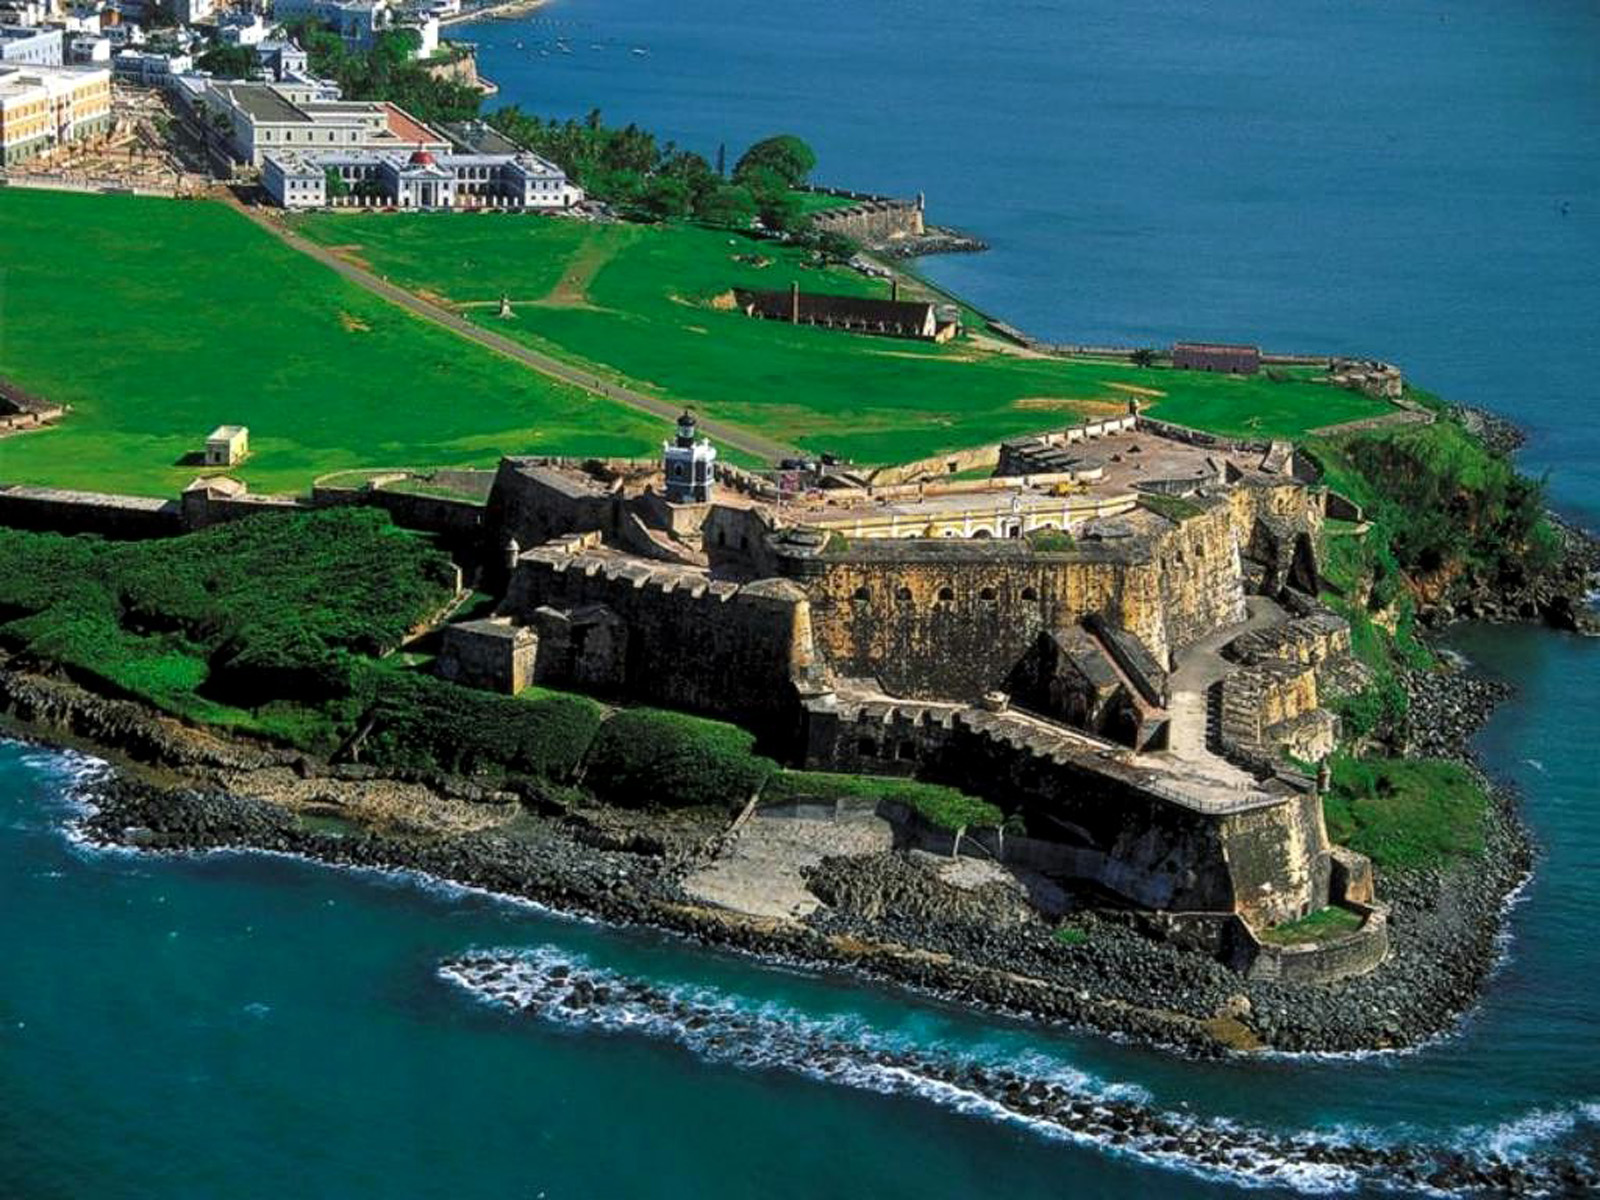 Пуэрто рико википедия. Форт Эль Морро Пуэрто Рико. Форт Сан Фелипе дель Морро. Форт в Сан Хуане Пуэрто Рико. Замок Сан-Фелипе-дель-Морро.